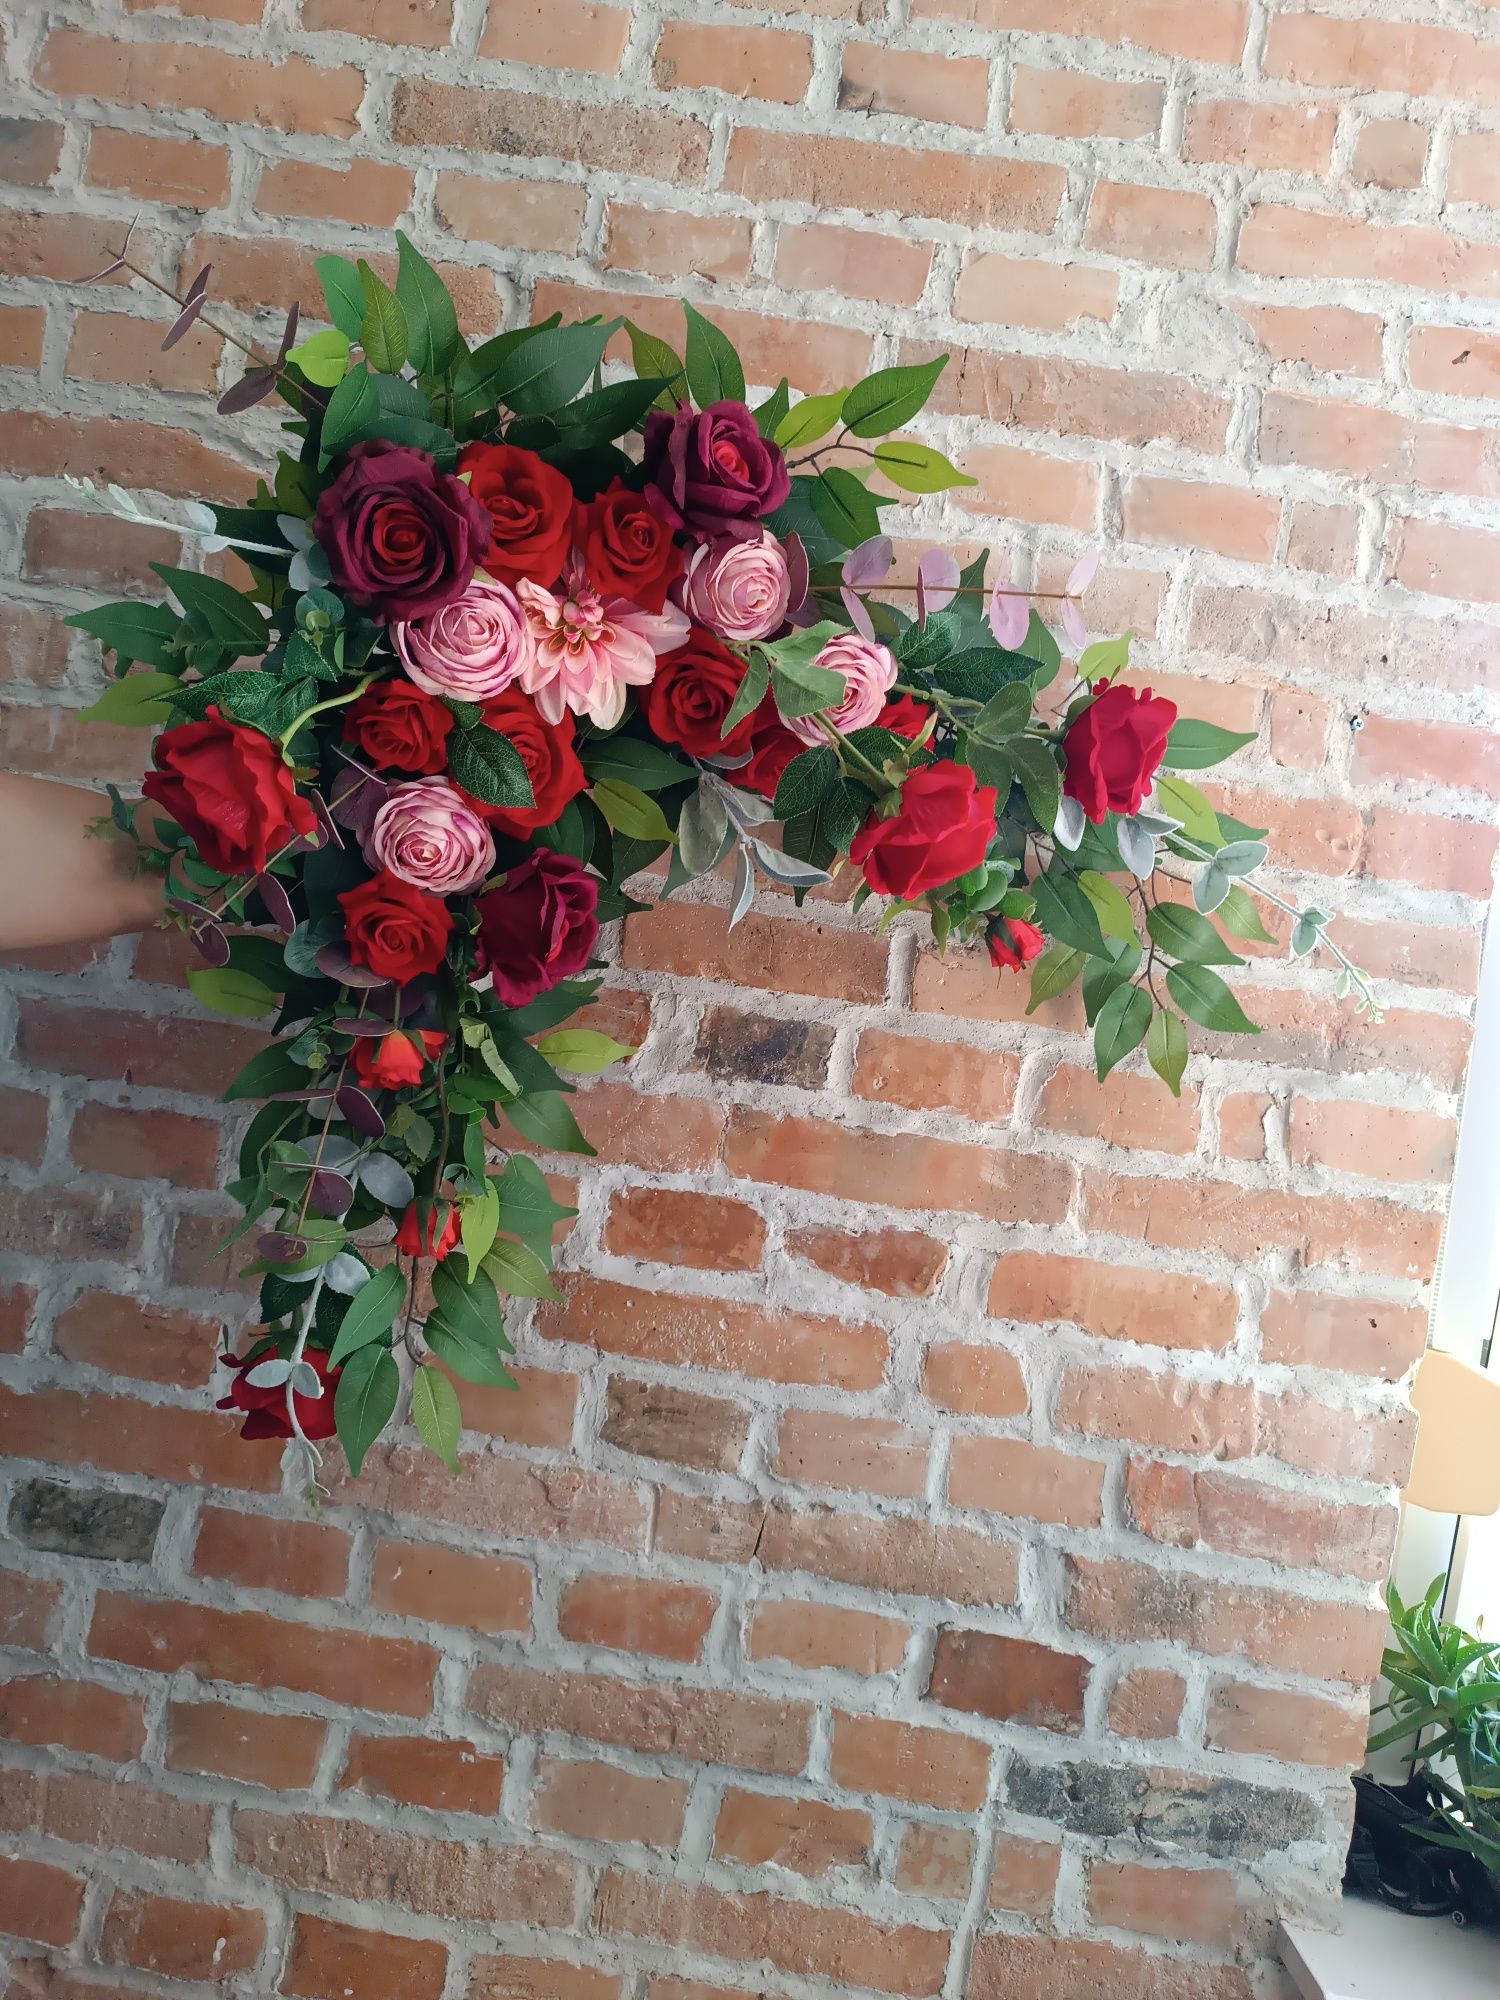 Dekoracja/Kwiaty na ślub/wesele czerwone róże